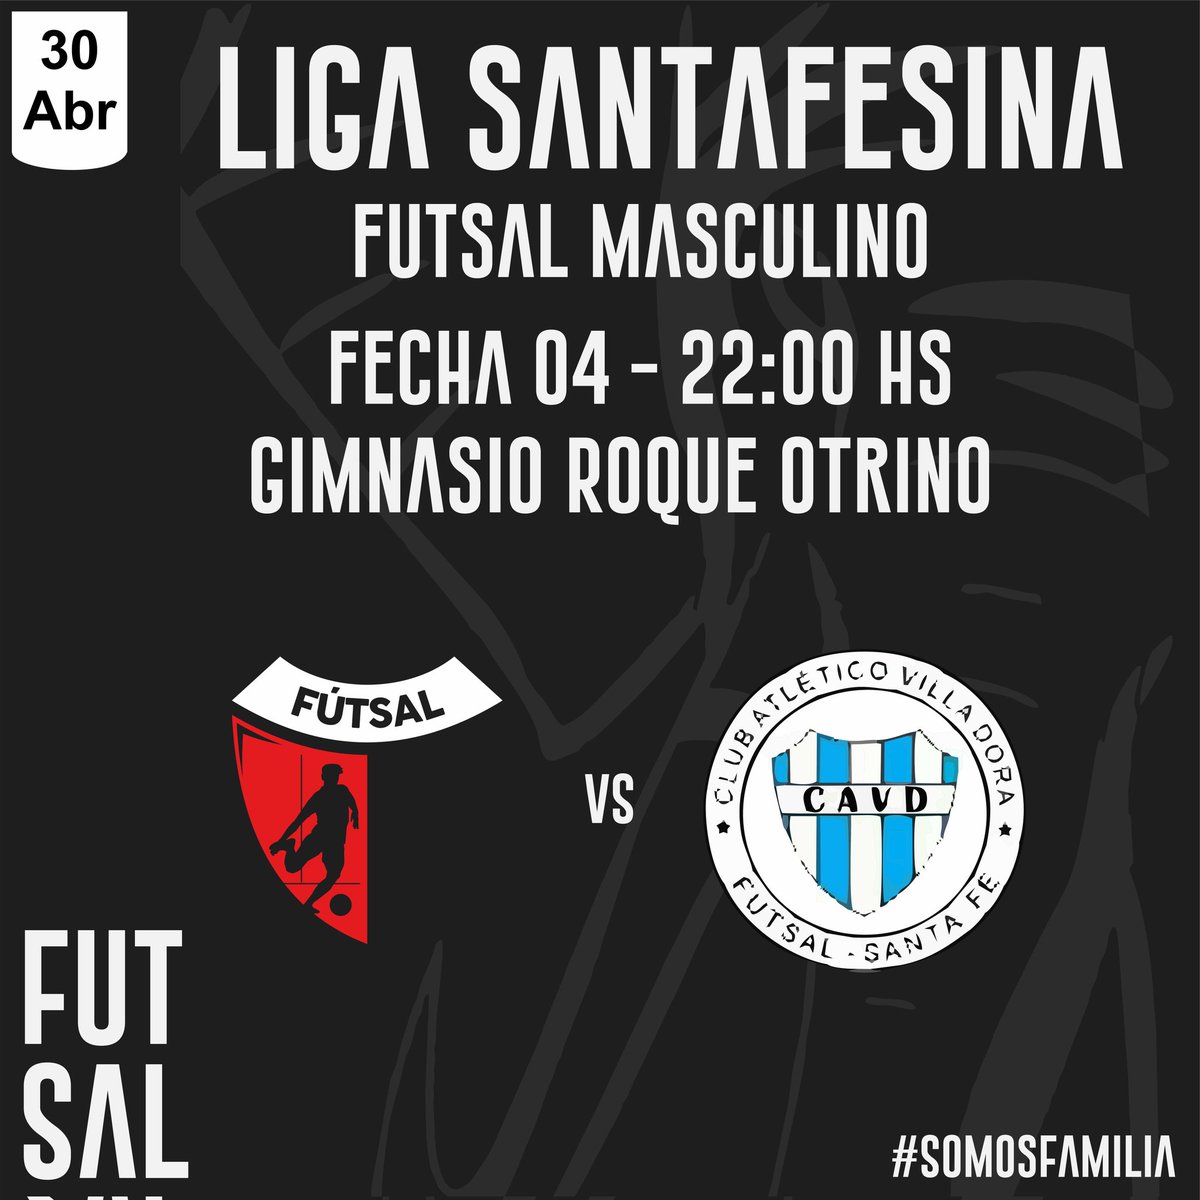 #Futsal Vuelven los pibes de @ColonFutsal al RpqueOtrino para enfrentar a Villadora el Martes 30 a las 22:00 hs.

#SomosFamilia
@ColonOficial